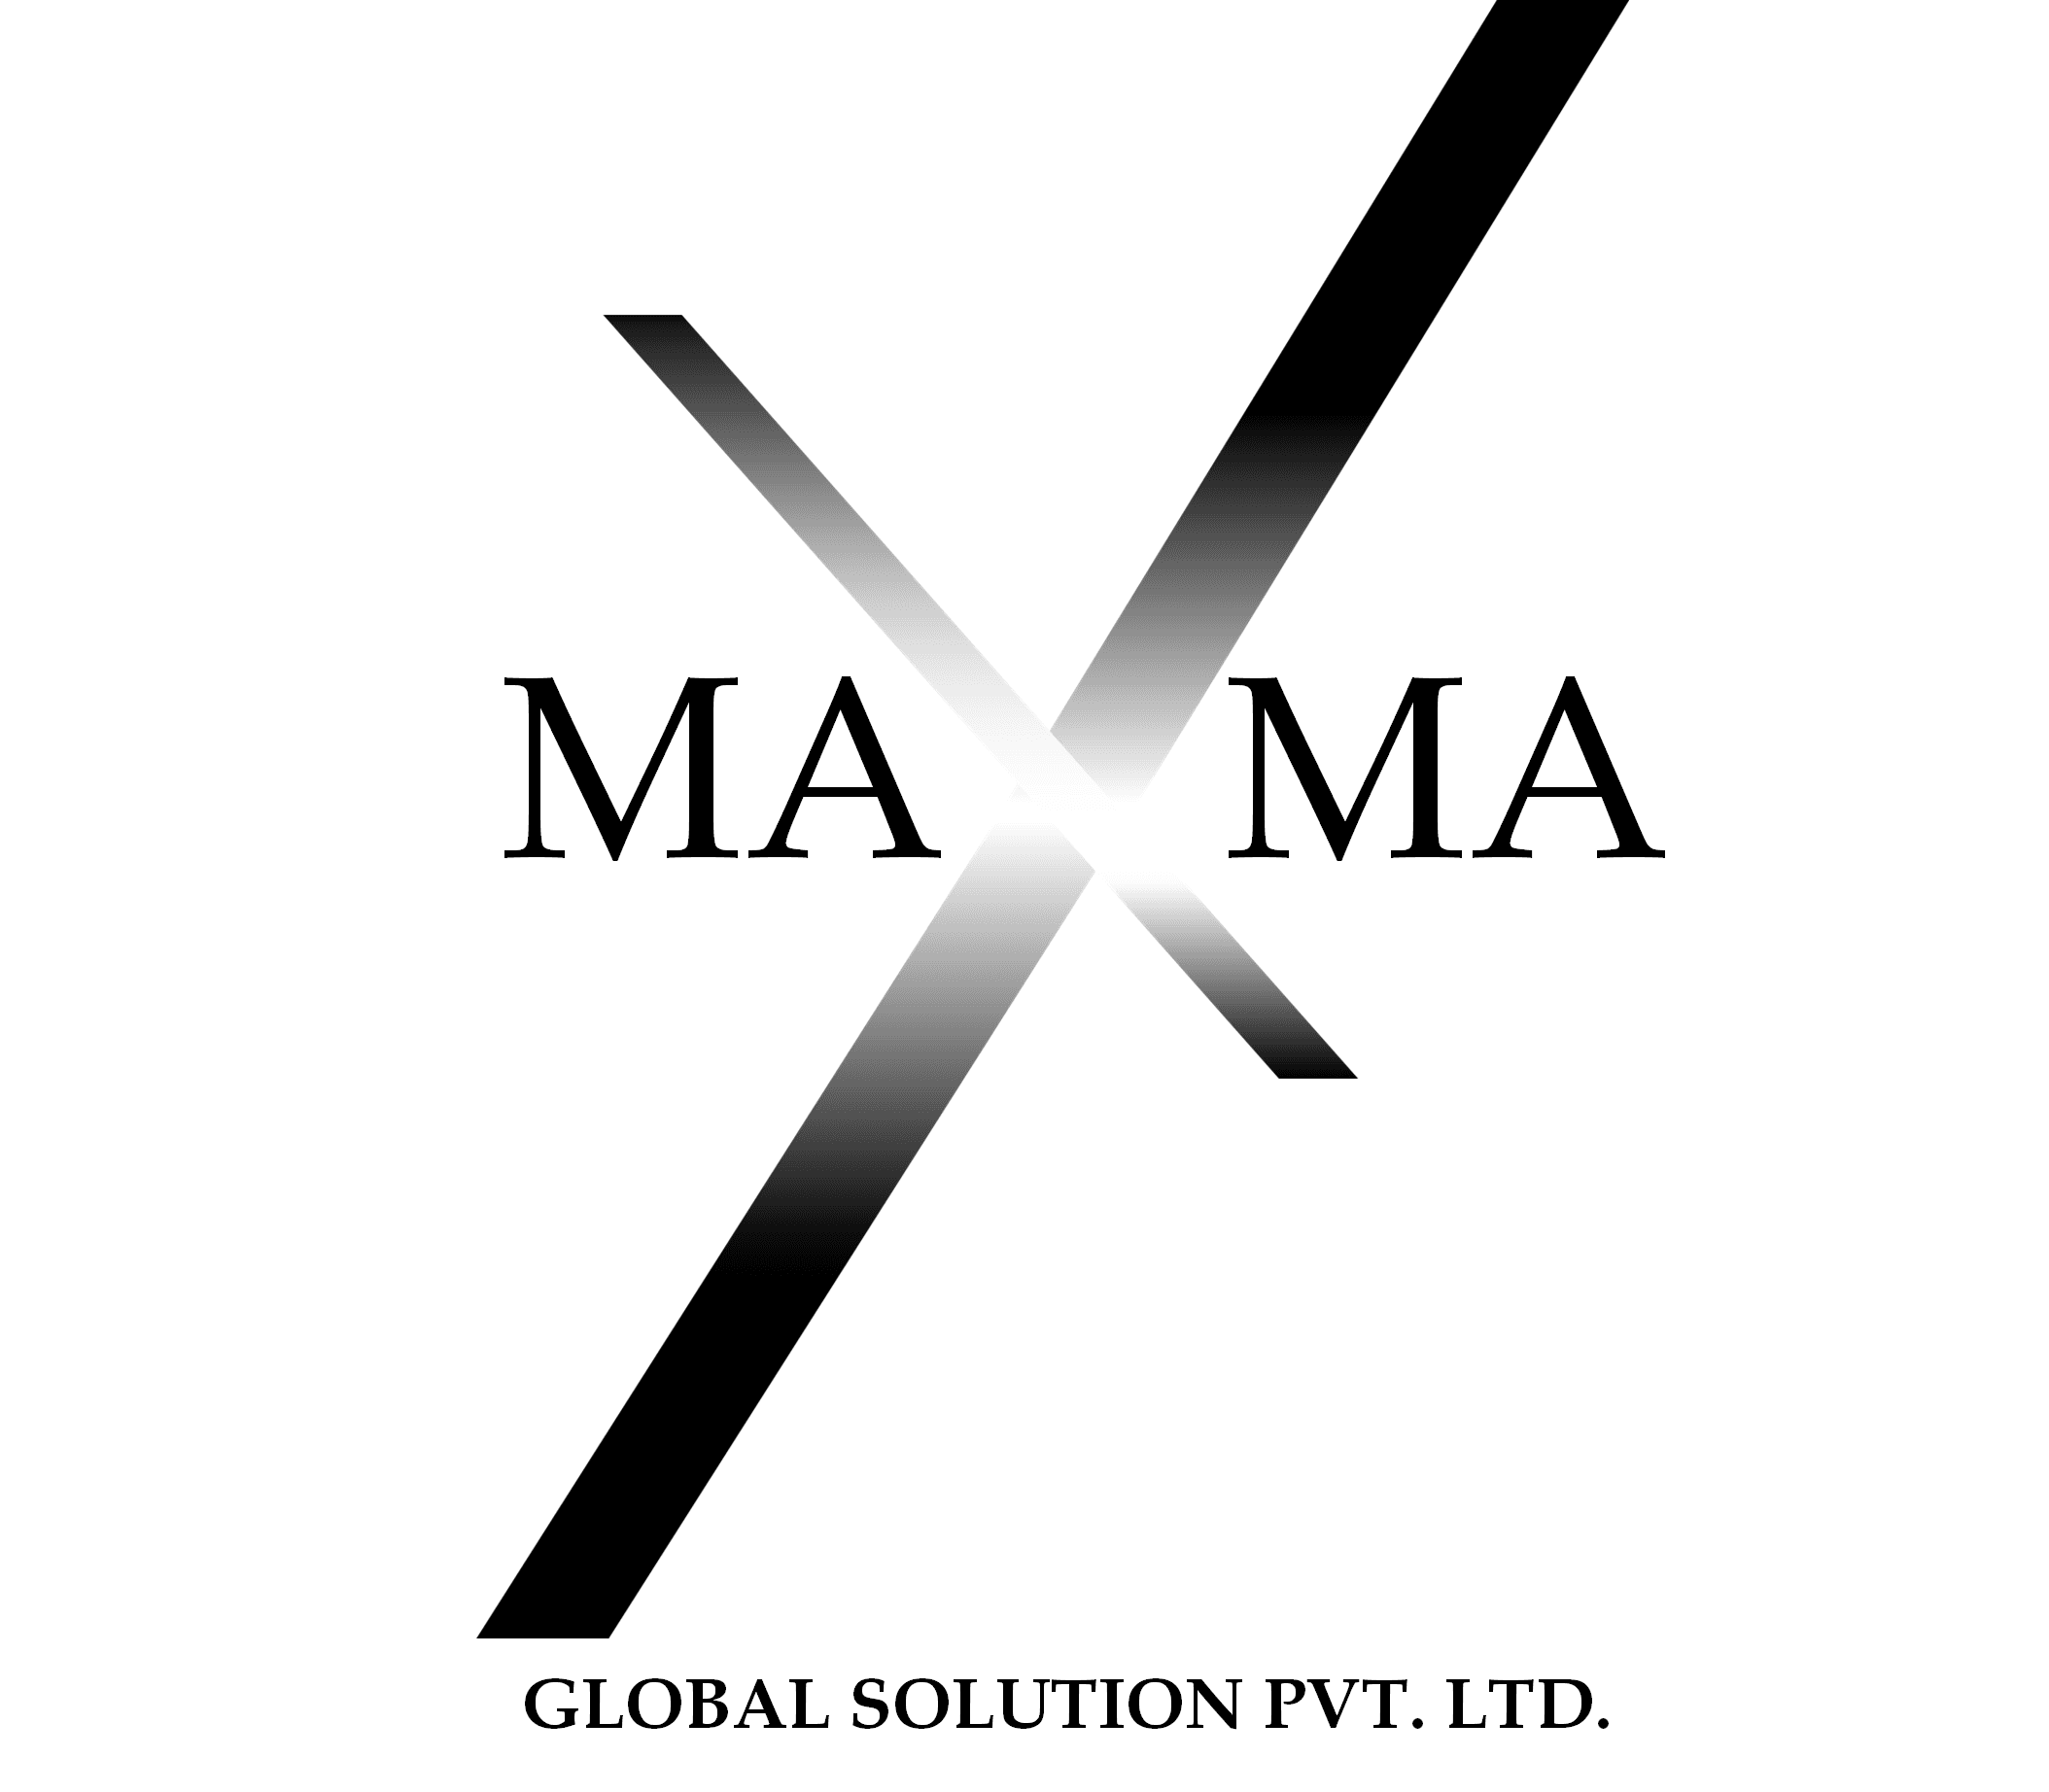 Maxma Global